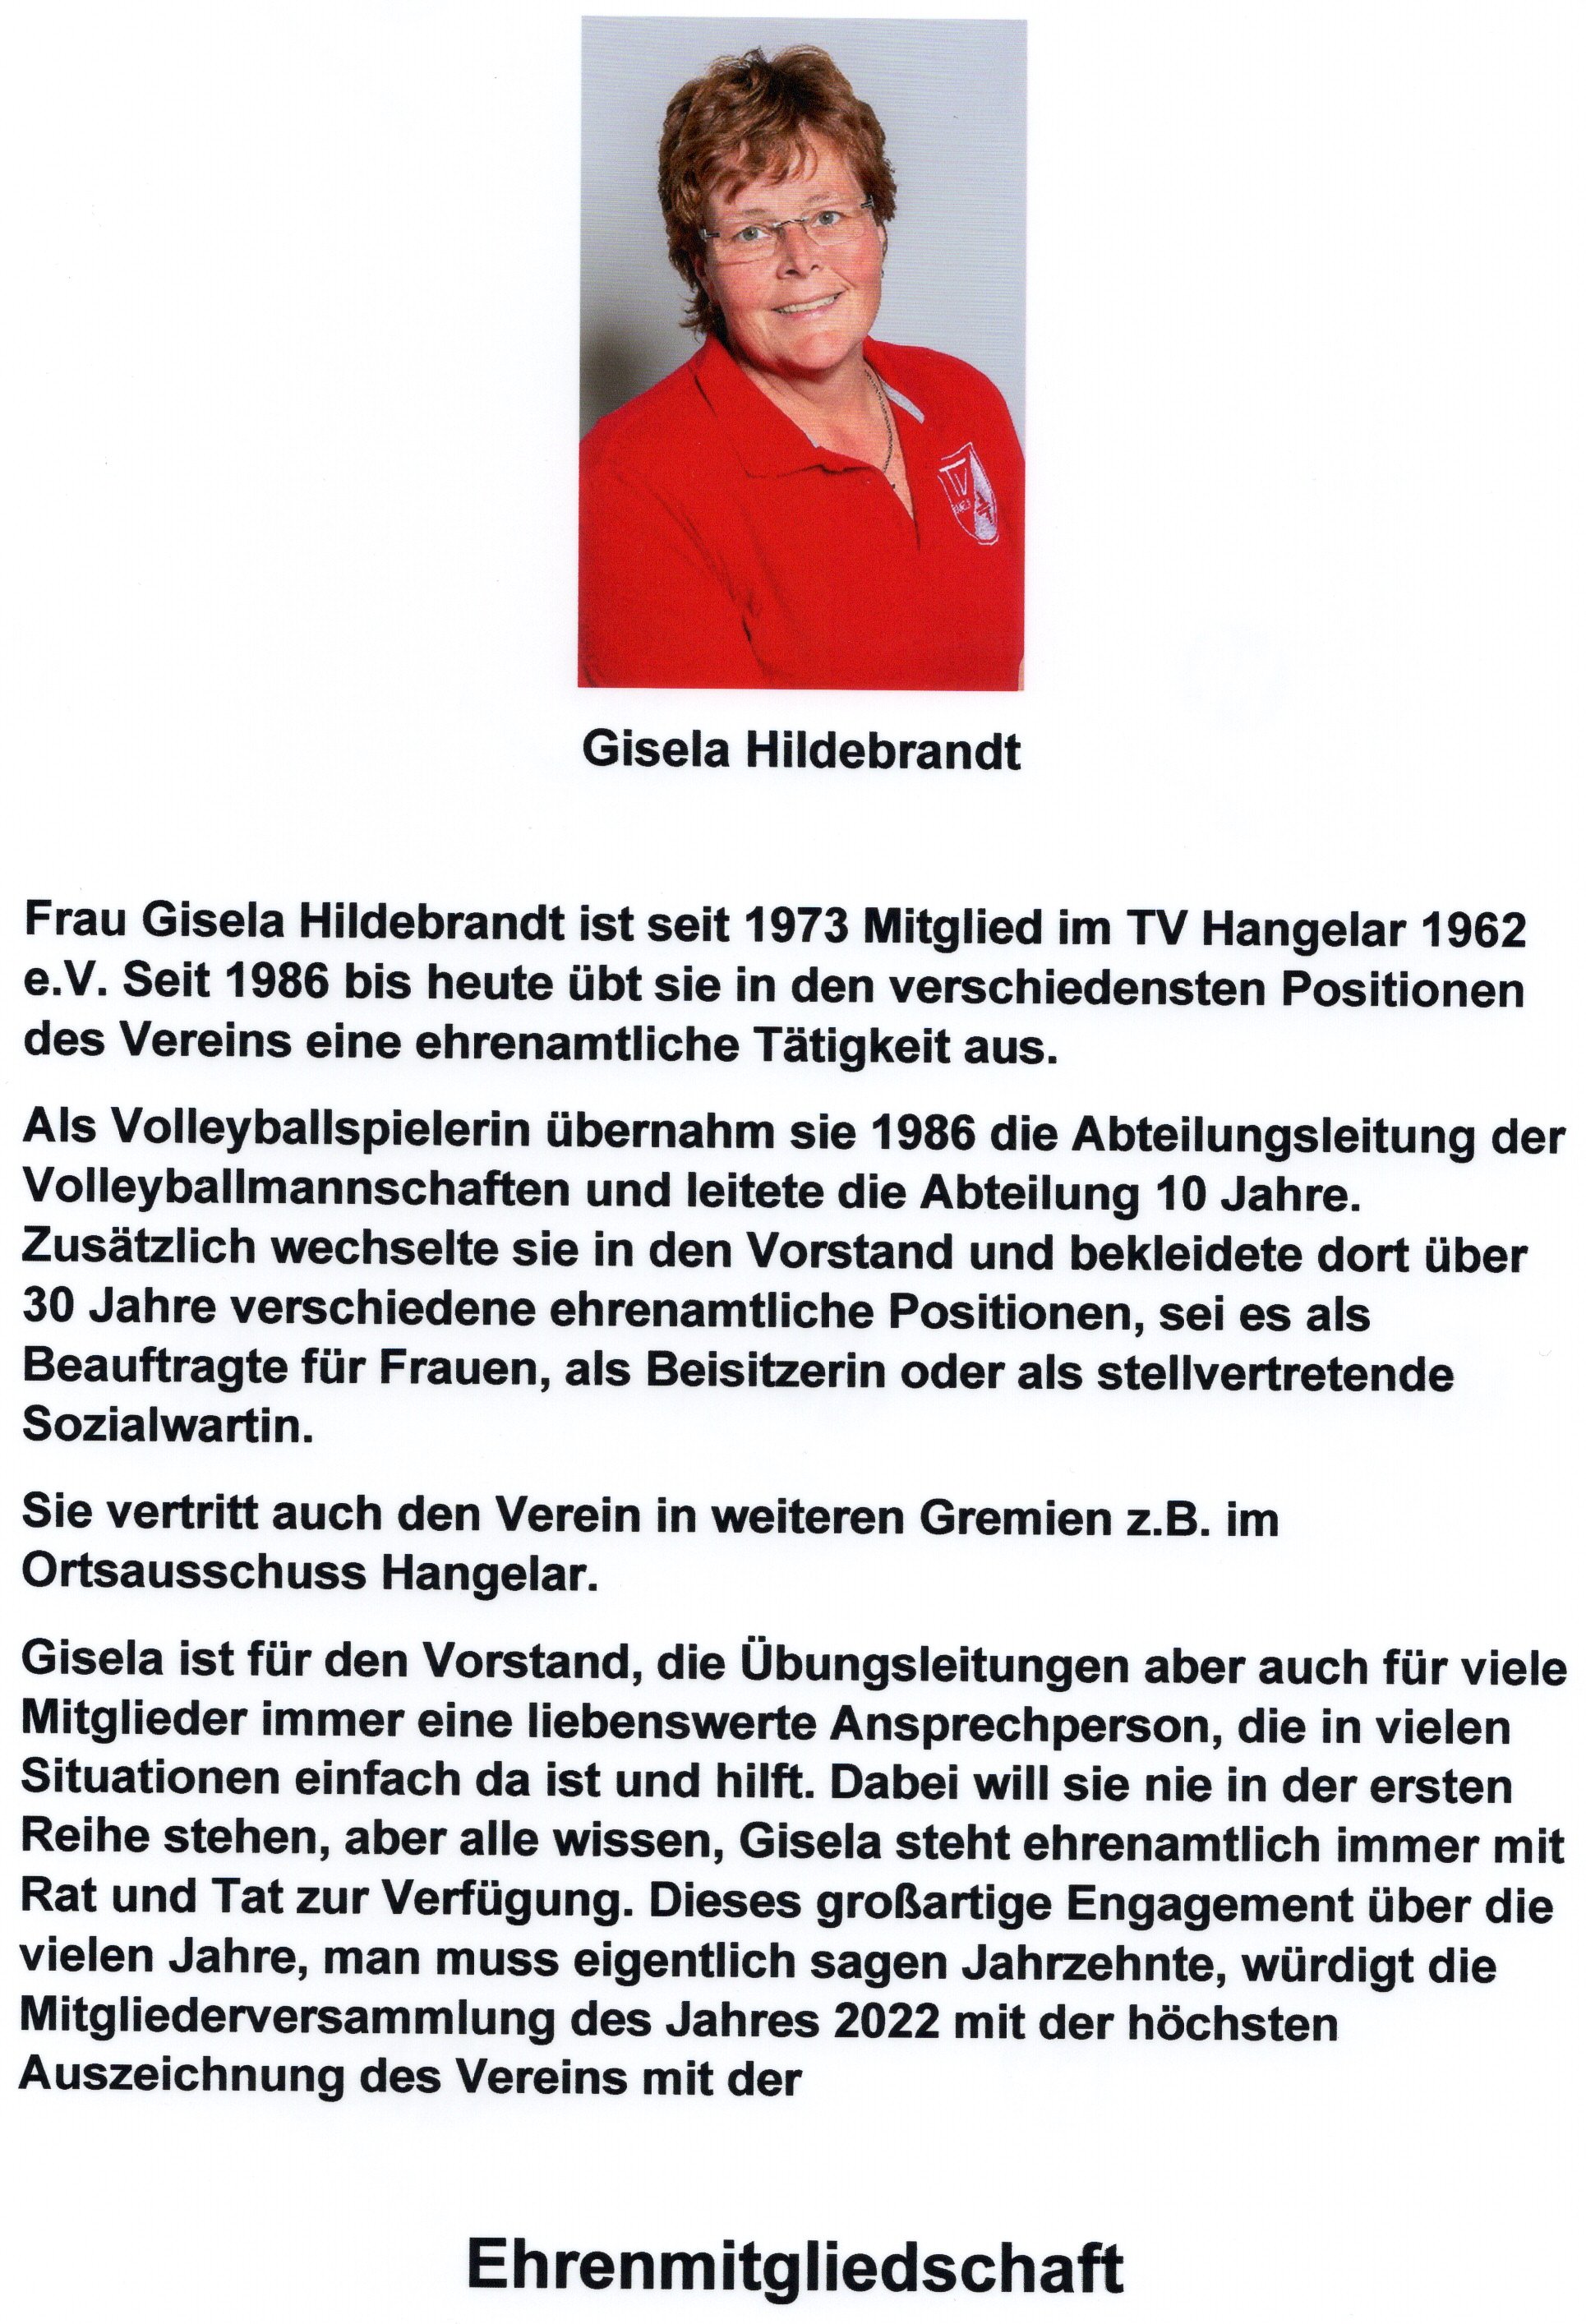 Ehrung Gisela Hildebrandt